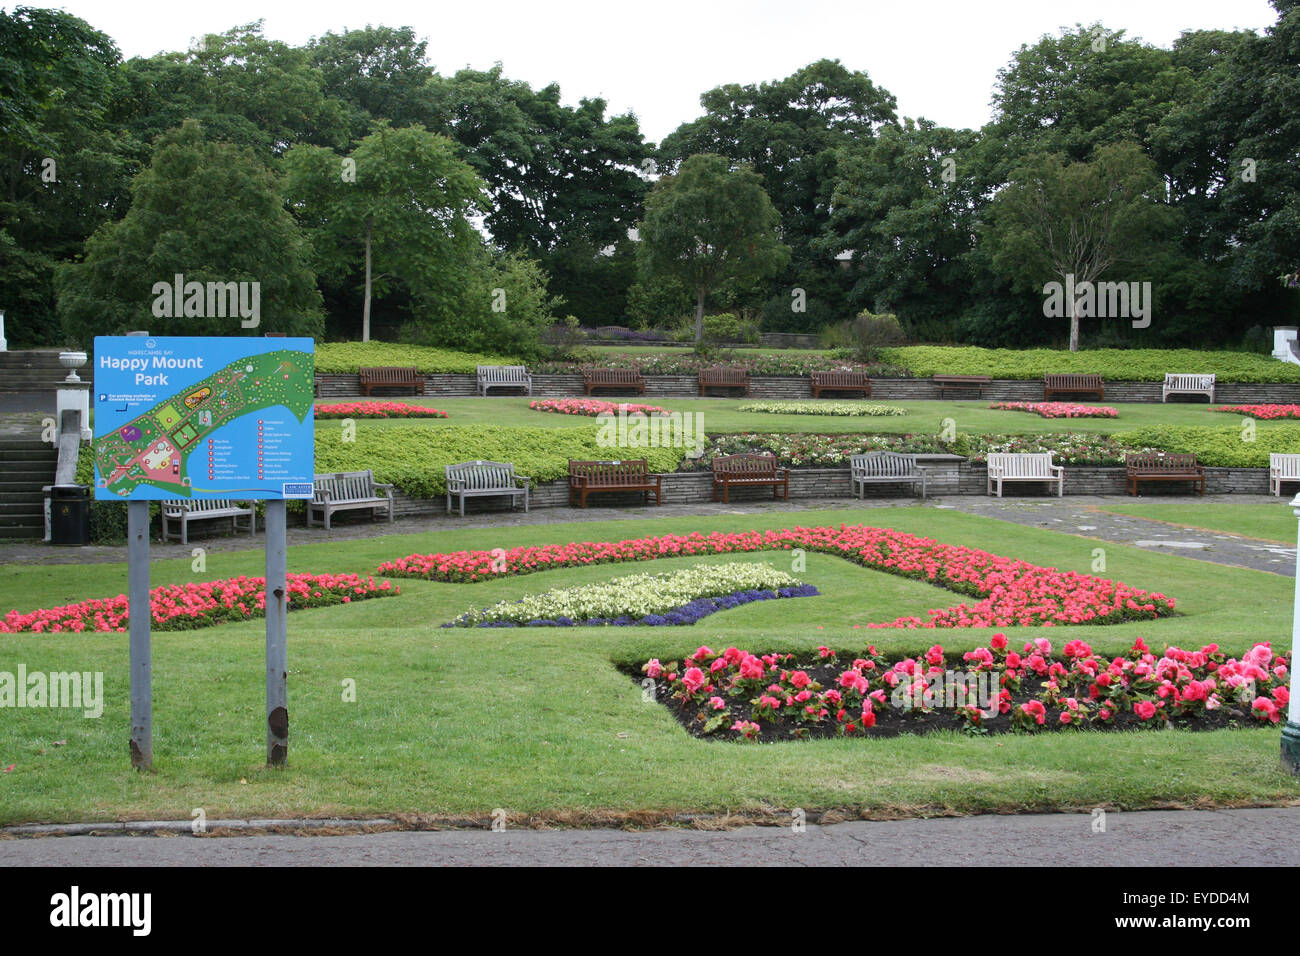 Glücklich Mount-Park, die grüne Flagge Status von Keep Britain Tidy ausgezeichnet Stockfoto